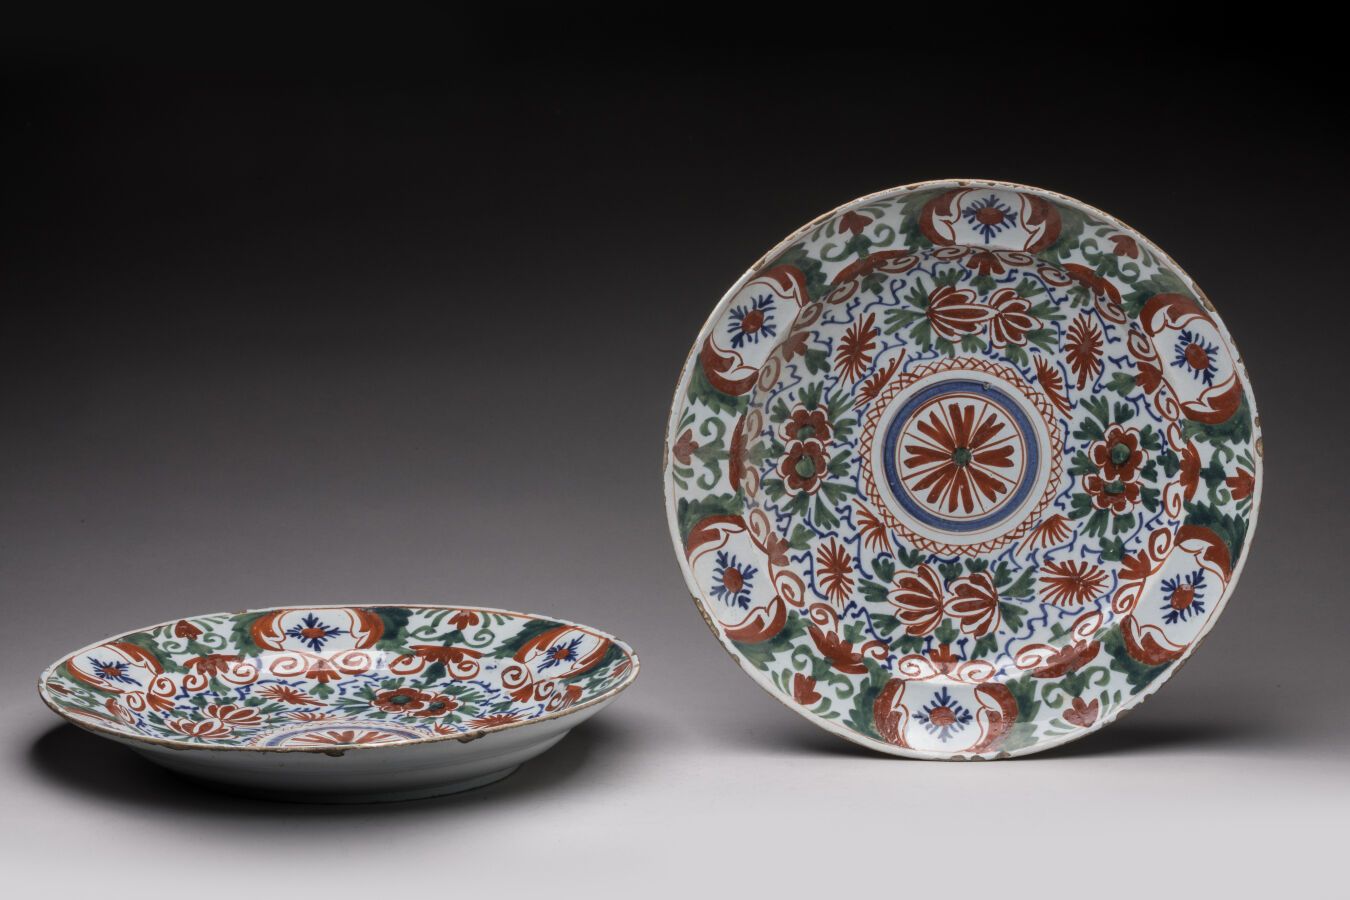 Null DELT。一对红、绿、蓝三色花卉装饰的圆形陶盘。18世纪时期。D. 33厘米。边缘上的芯片。